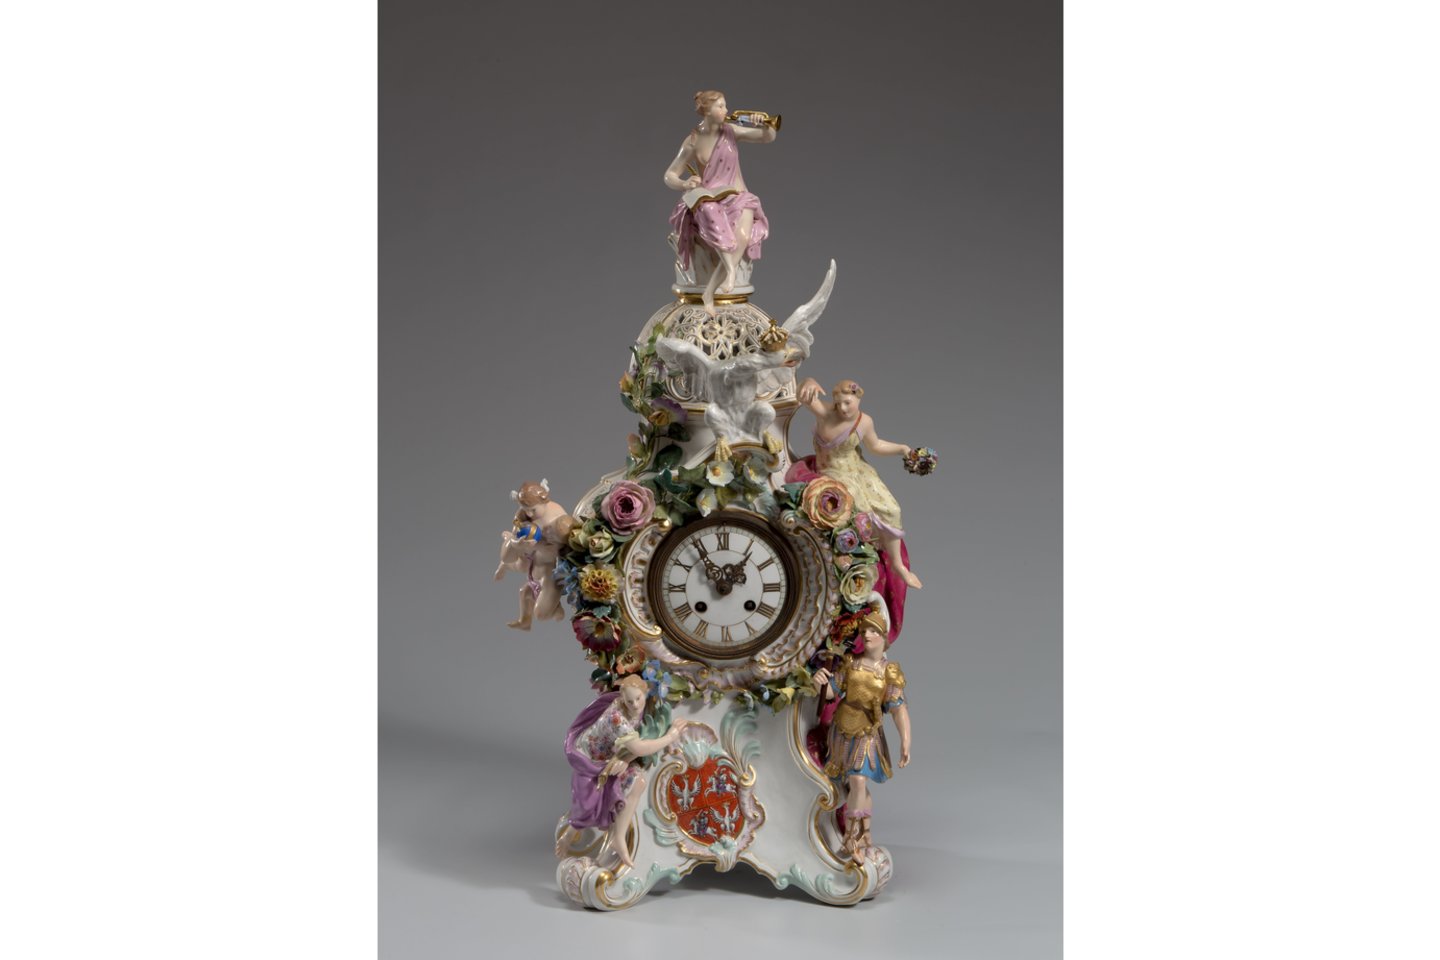 Porcelianinis rokoko stiliaus laikrodis papuoštas Abiejų Tautų Respublikos herbu. Pagamintas Meiseno porceliano manufaktūroje 1850–1924 m.<br>LDM nuotr.